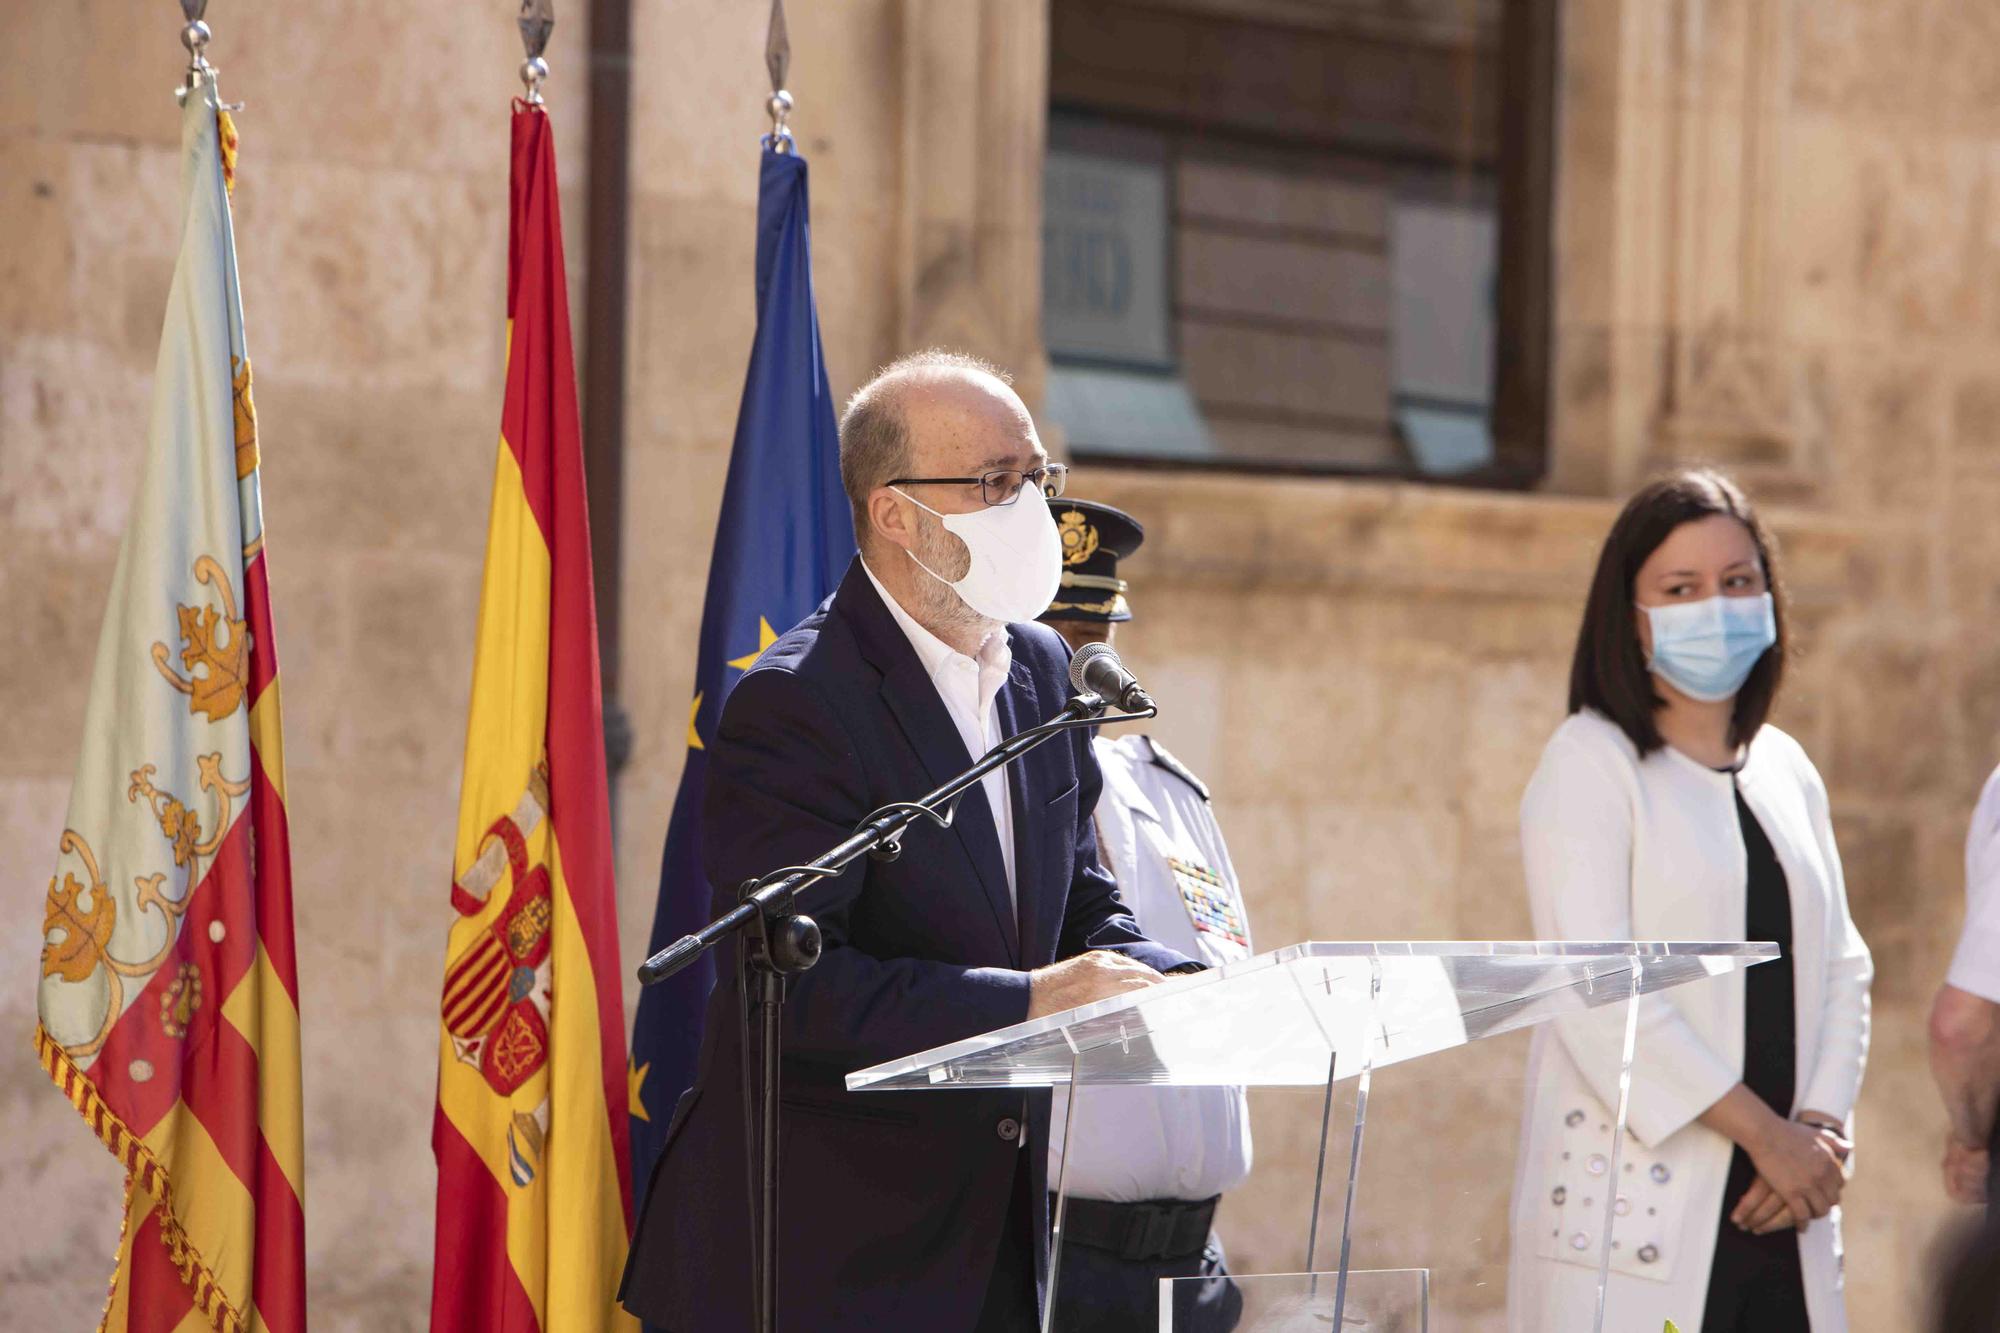 Entrega del bastón de mando al inspector jefe de la Comisaría de la Policía Nacional de Alzira - Algemesí.